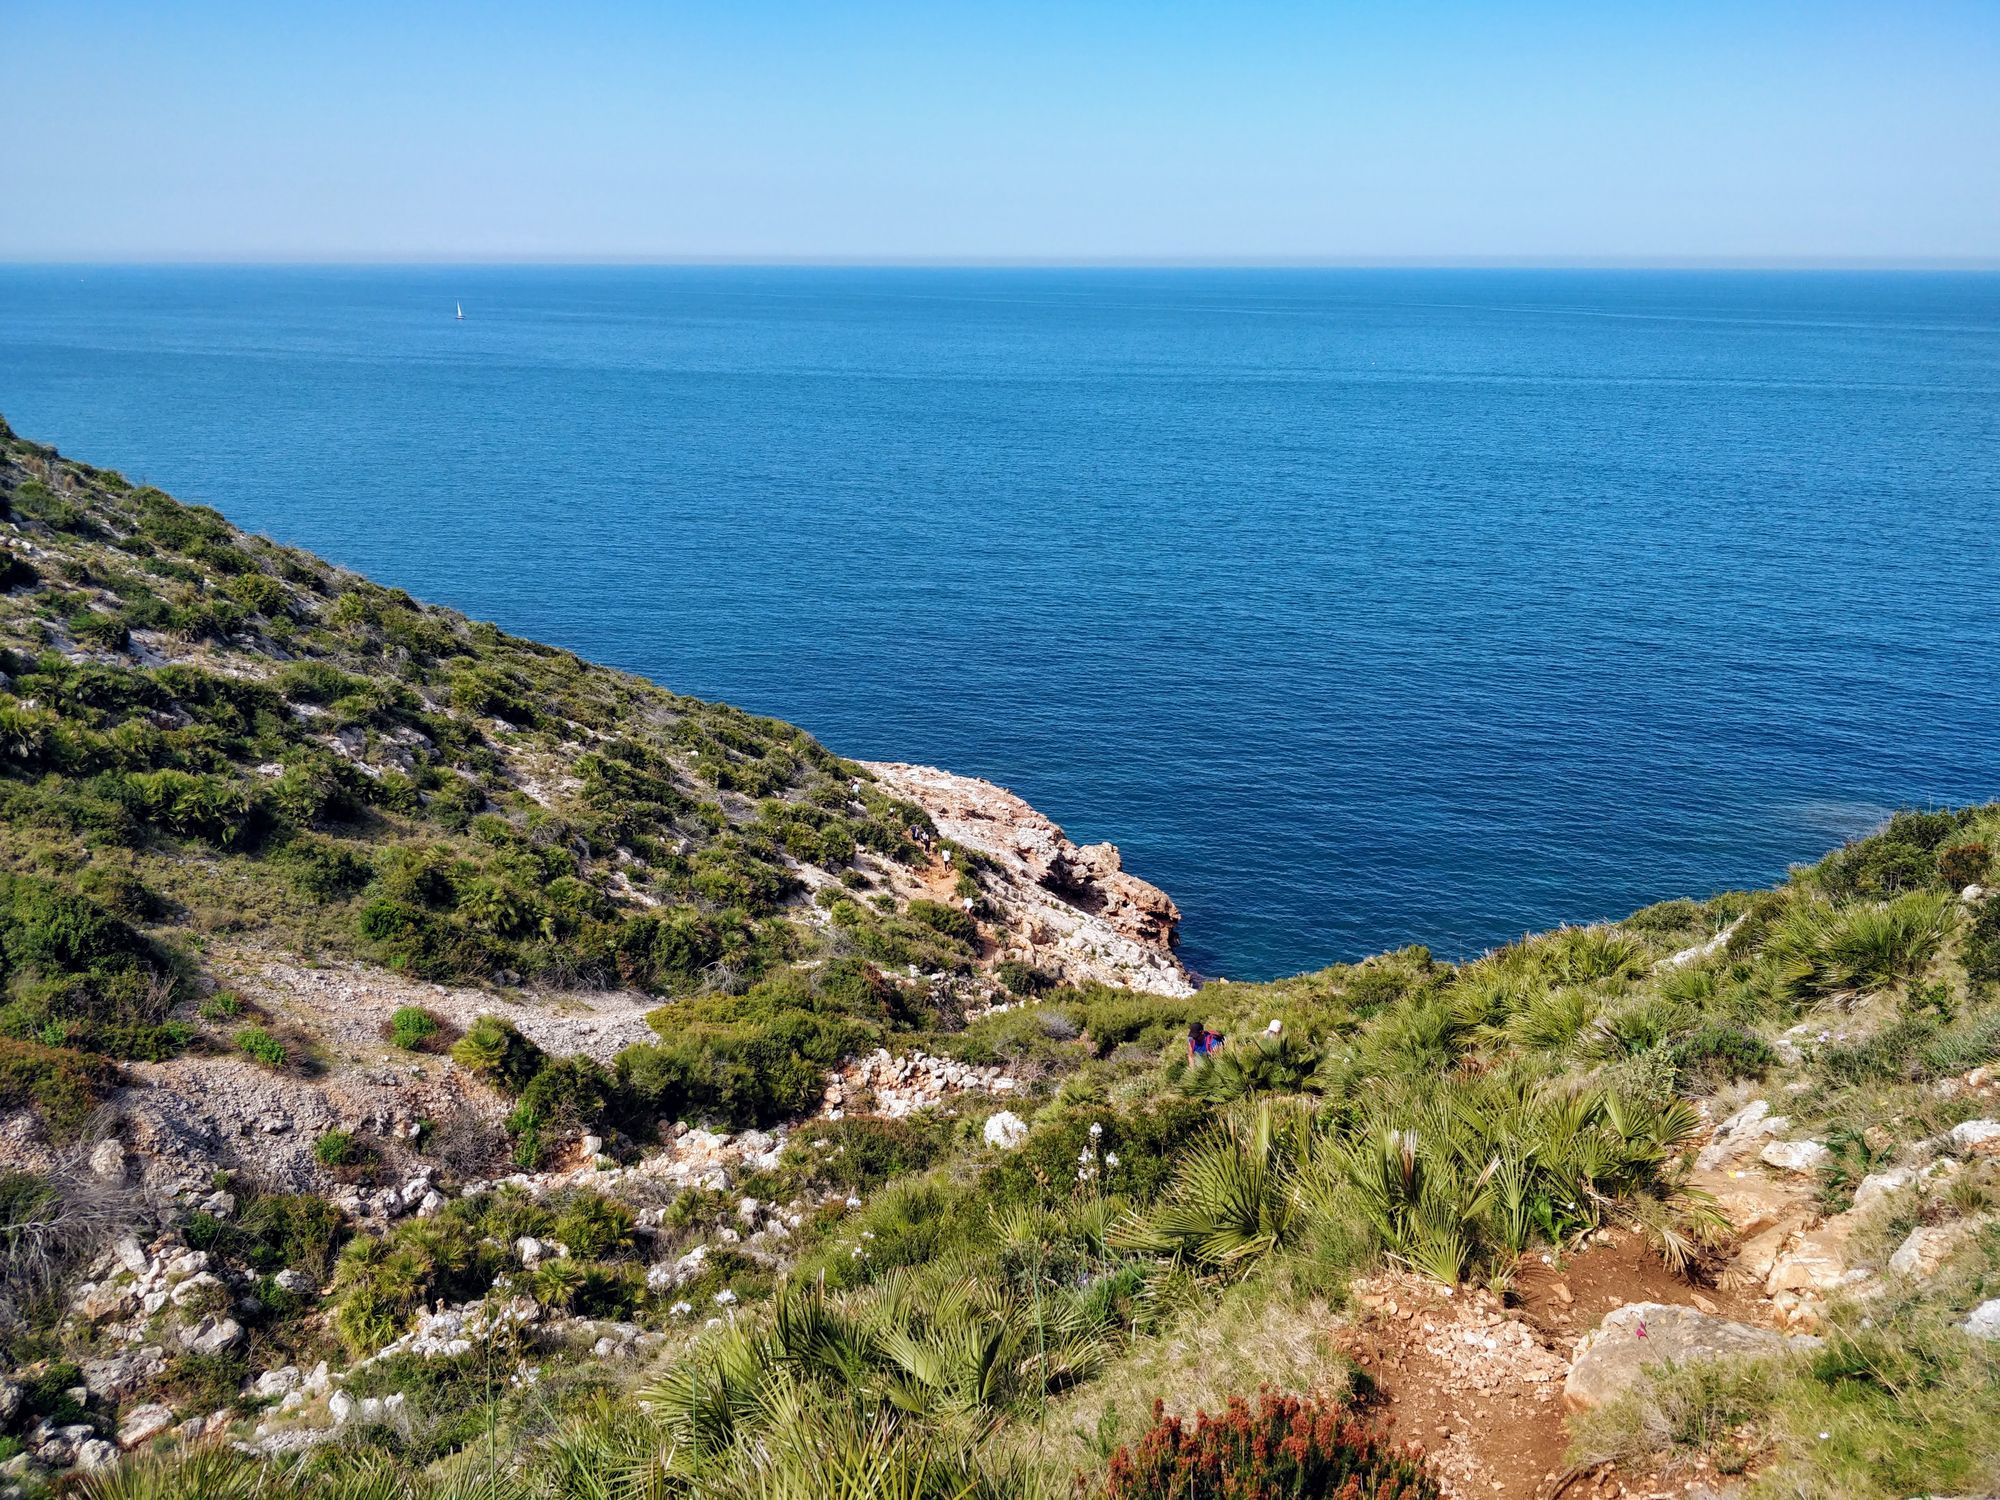 Cova Tallada - Peștera Sculptată de Marea Mediterană și de spanioli (Apr 2021)